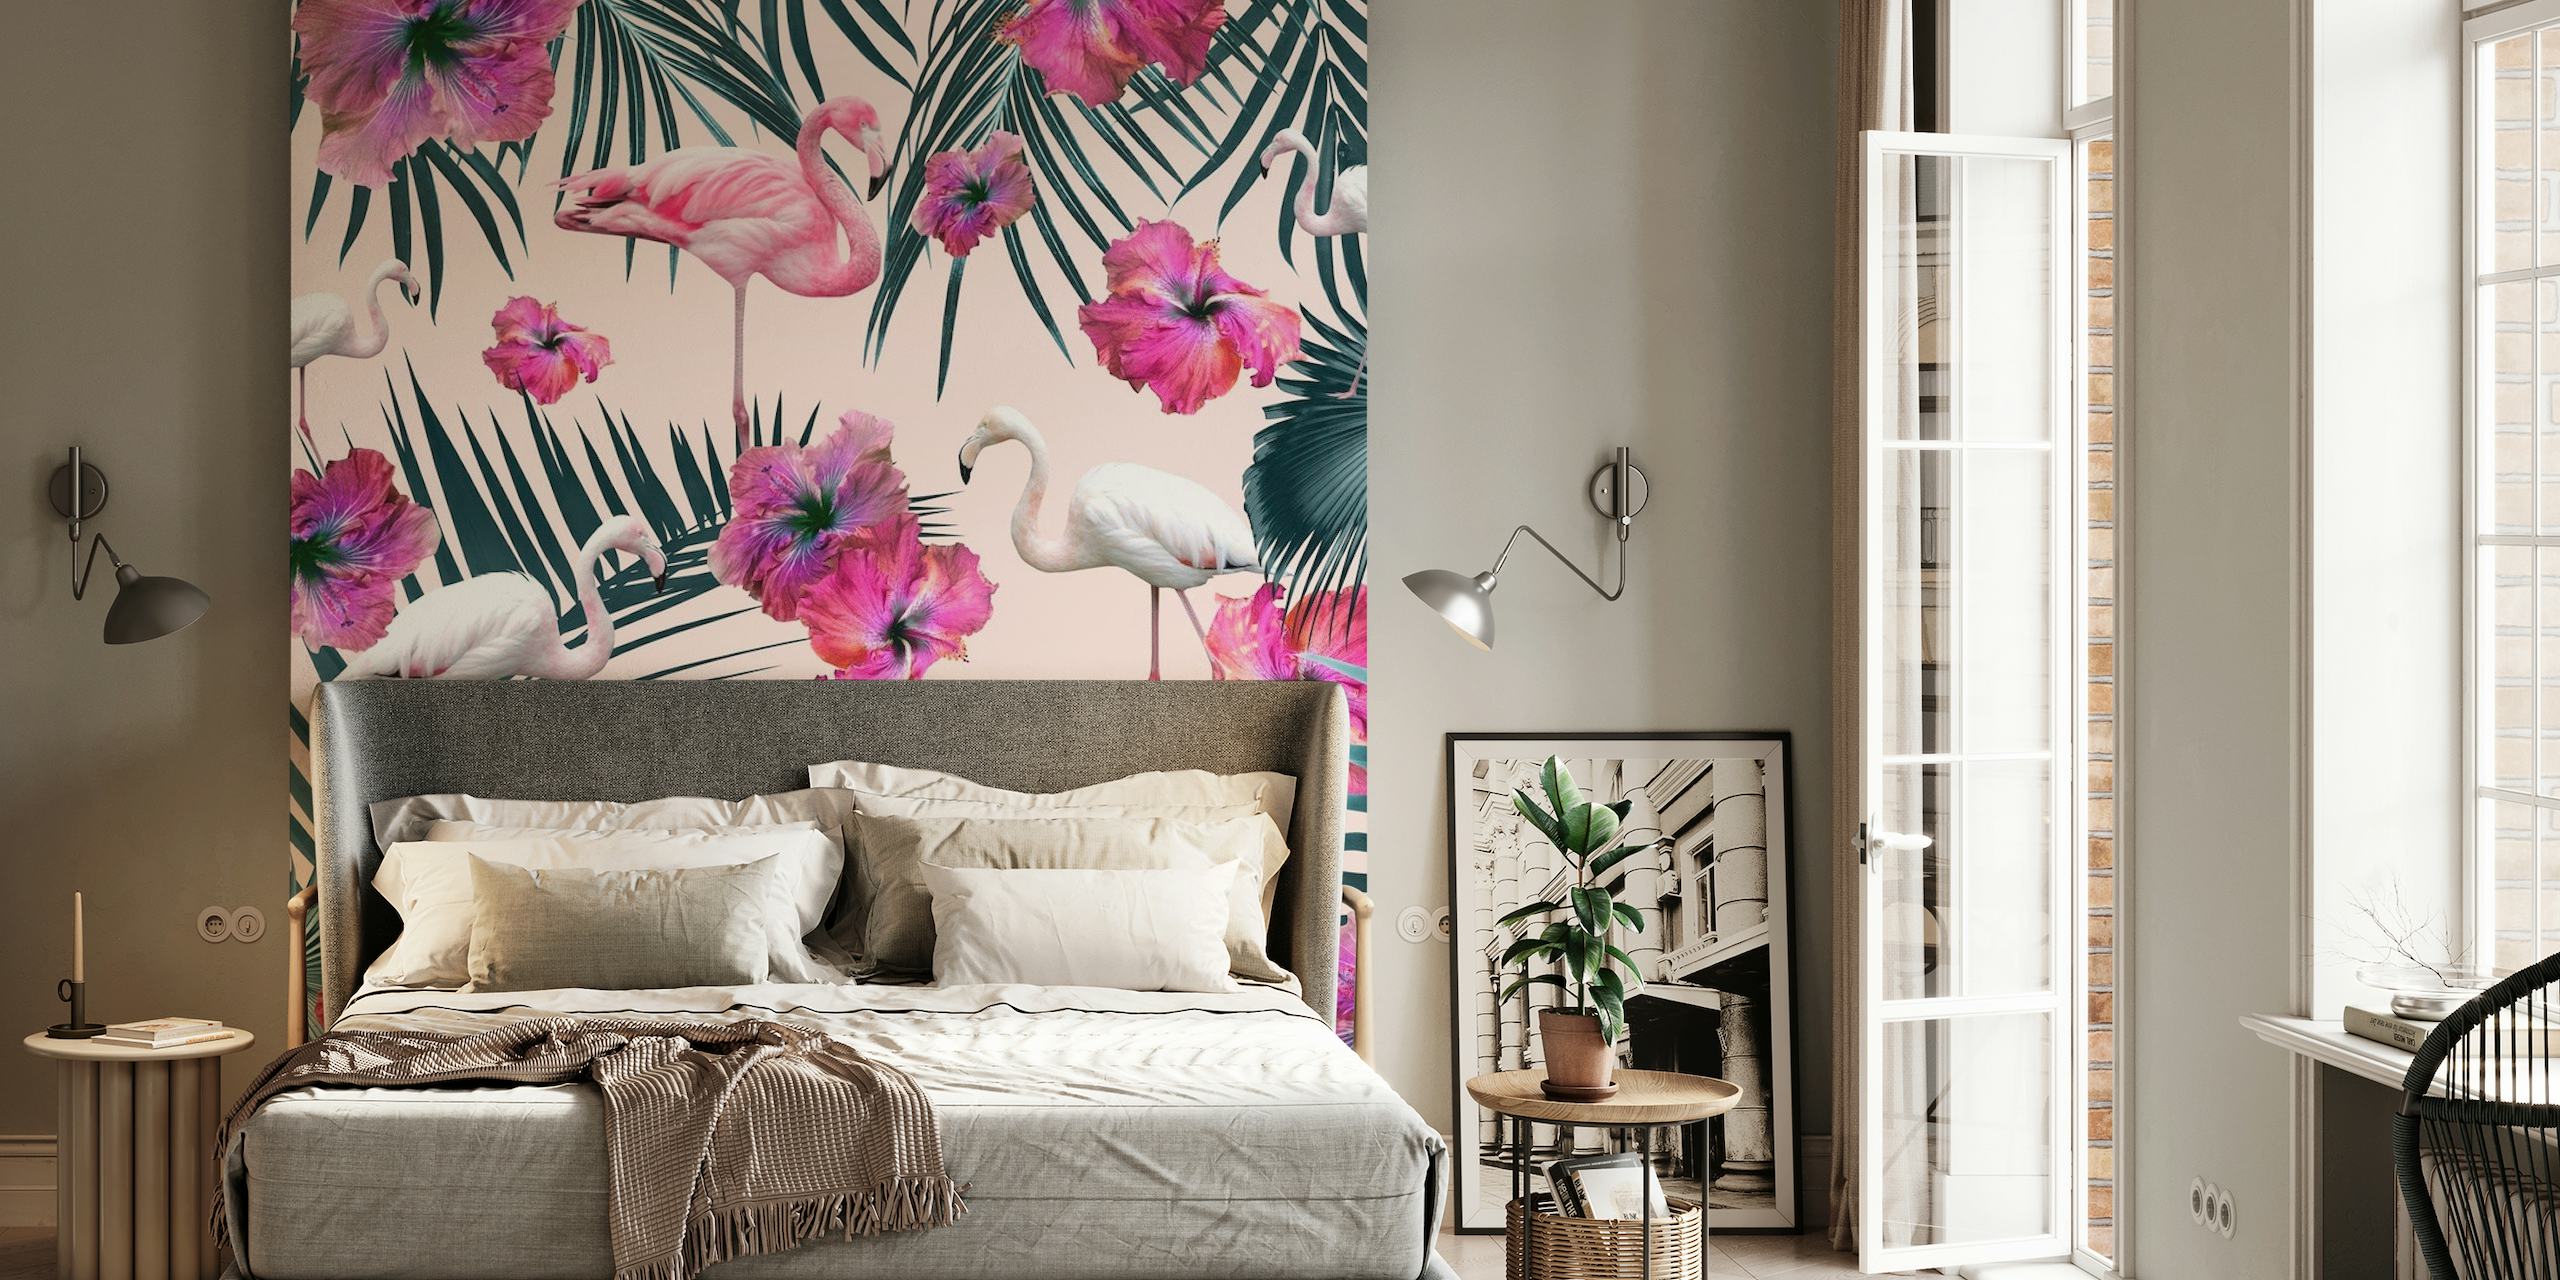 Roze flamingo's en hibiscus op een muurschildering met een tropisch thema